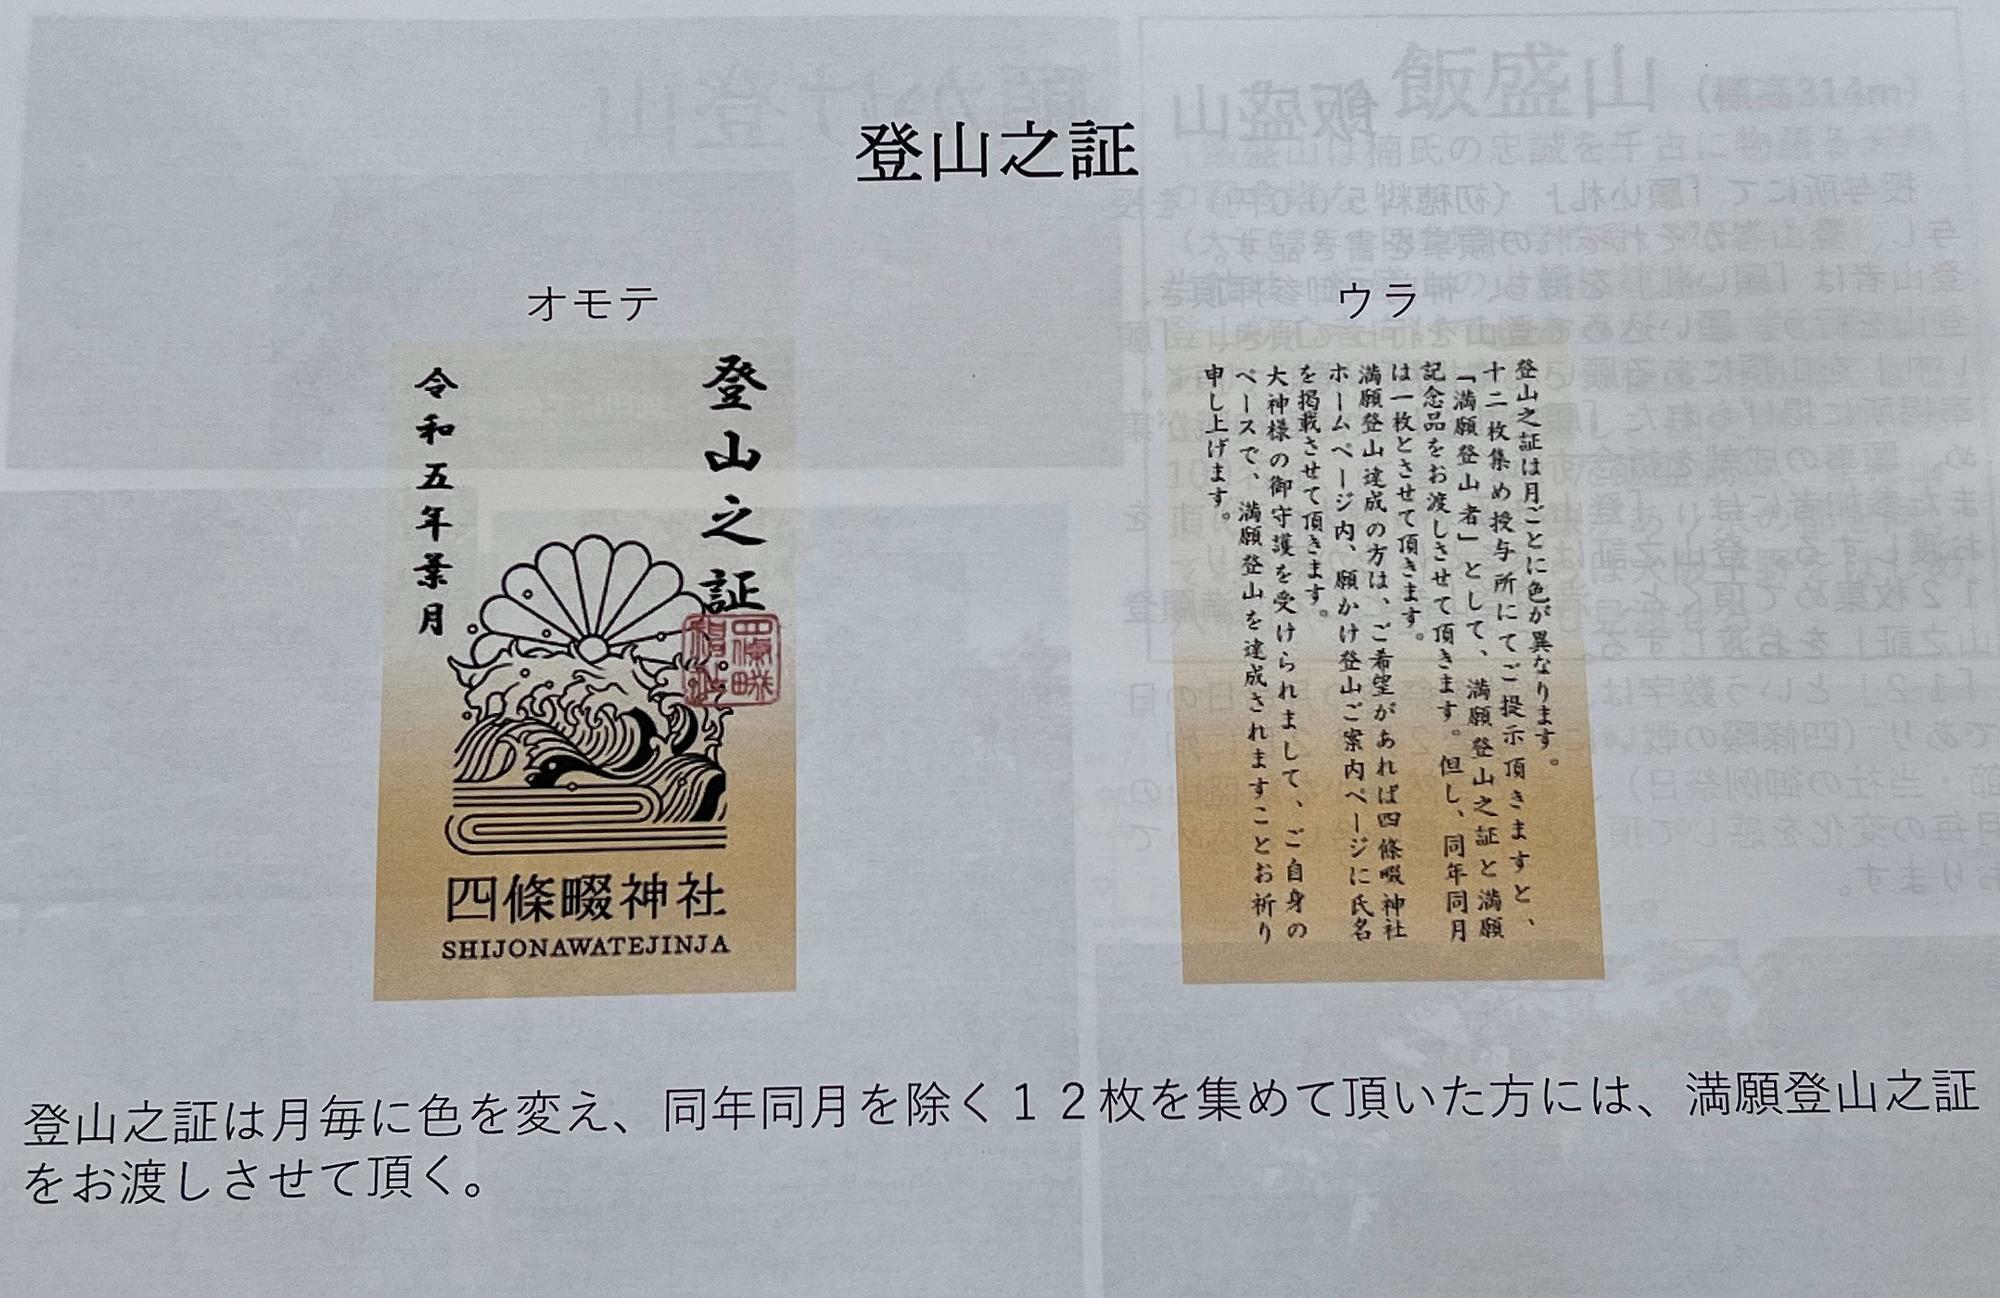 四條畷神社作成の書類に記された「登山之証」のイラスト。「登山之証」は月ごとに色を変更